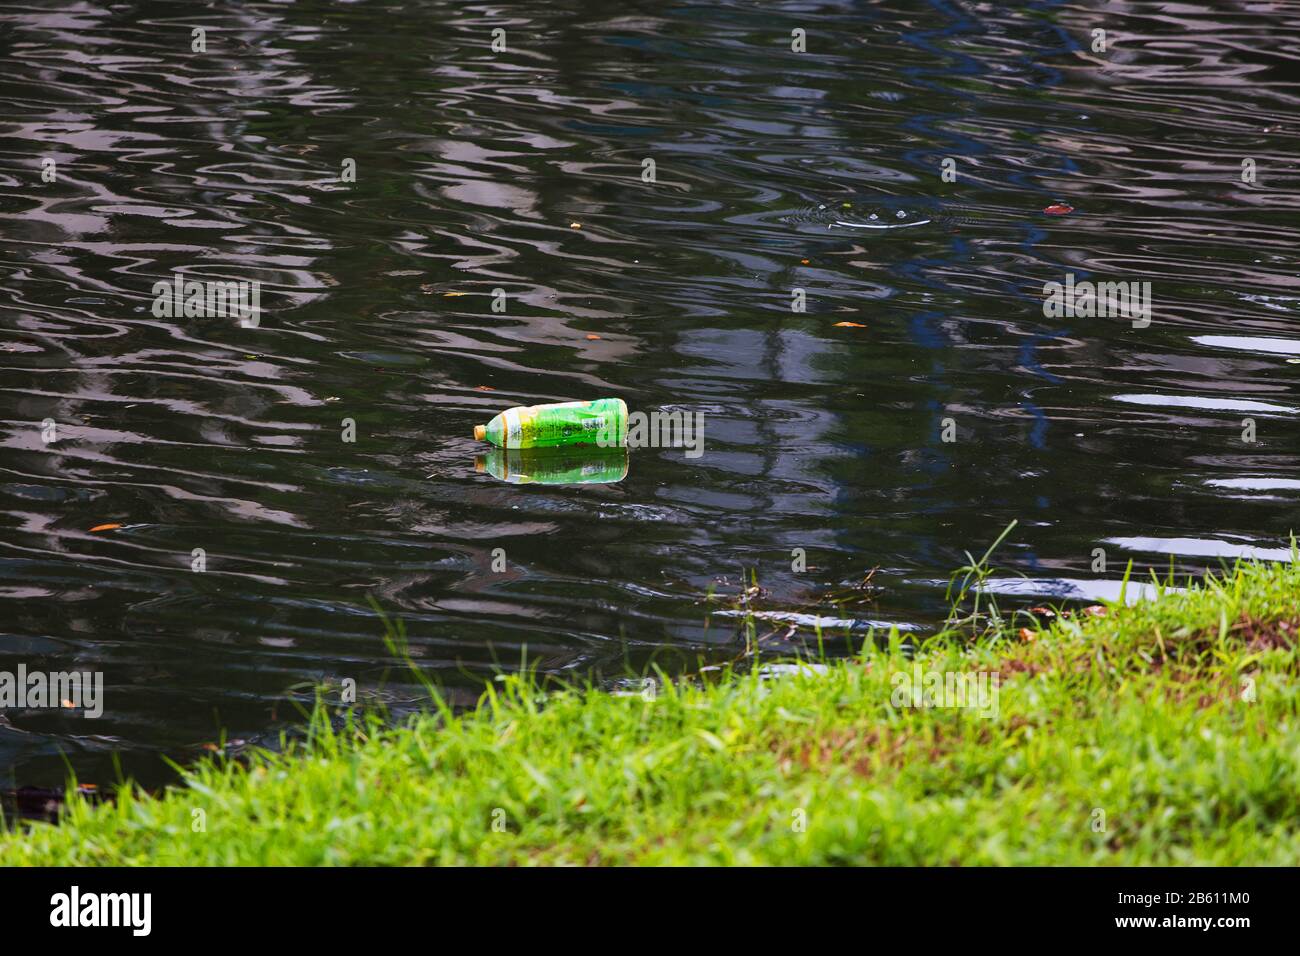 Eine Plastikflasche, die auf dem sauberen Fluss schwimmt, braucht Technologie, um Menschen zu bekämpfen, die das Abwasser ins Wasser werfen. Stockfoto